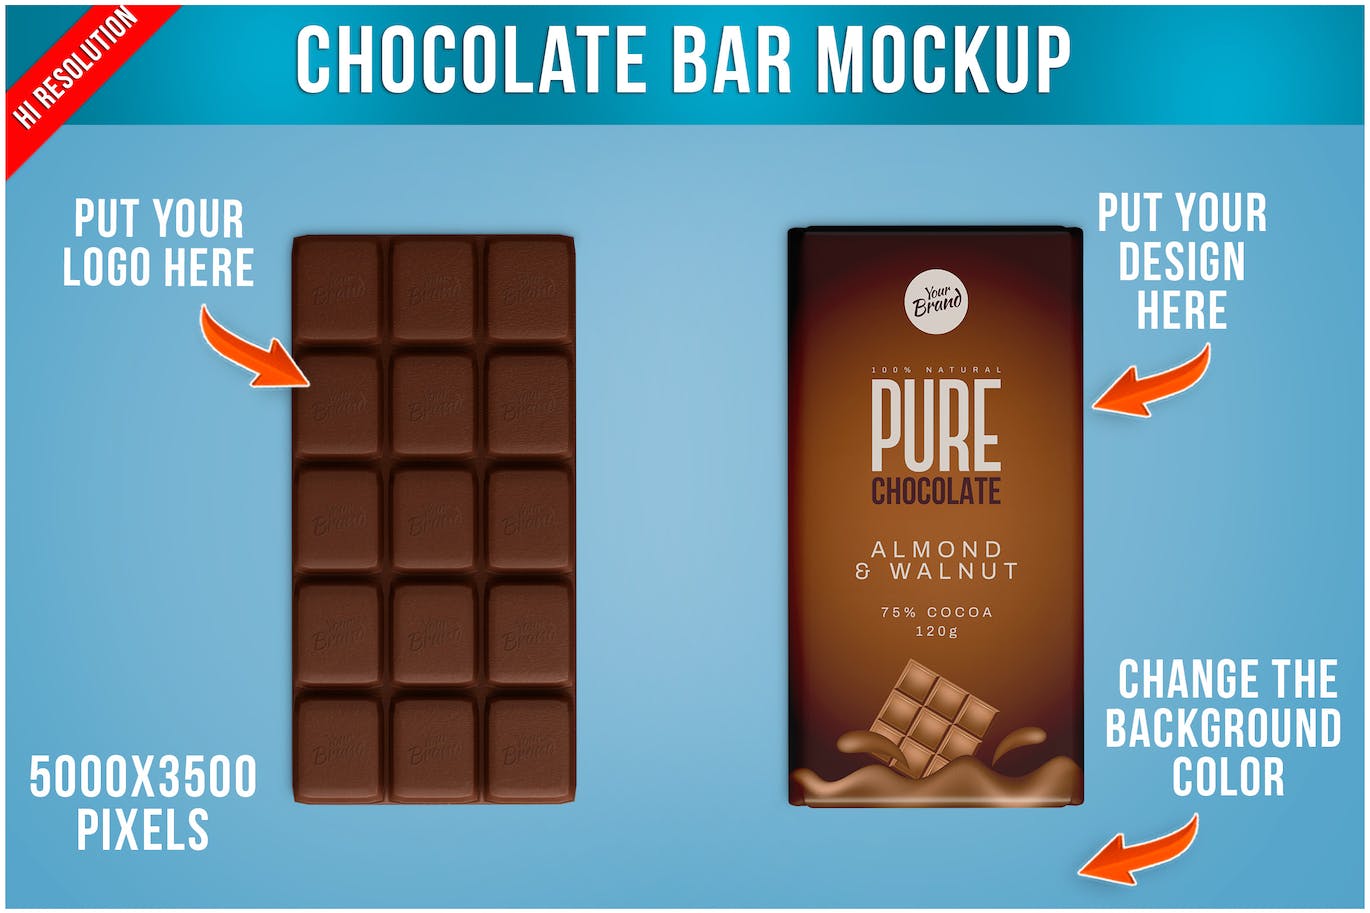 巧克力棒食品包装设计样机 Chocolate Bar Mockup 样机素材 第1张